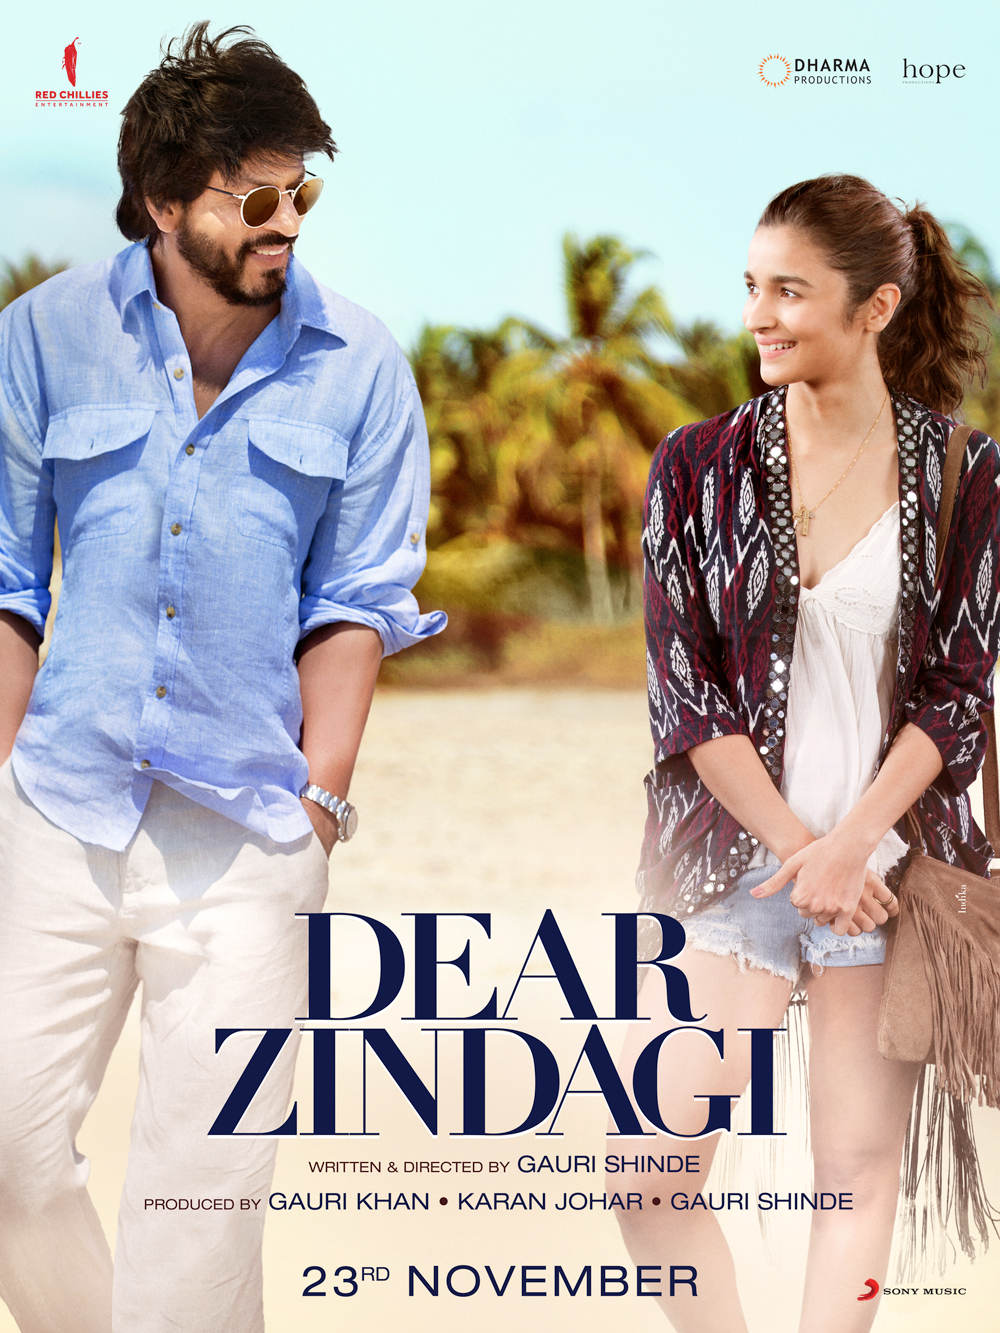 دانلود فیلم Dear Zindagi 2016 با دوبله فارسی